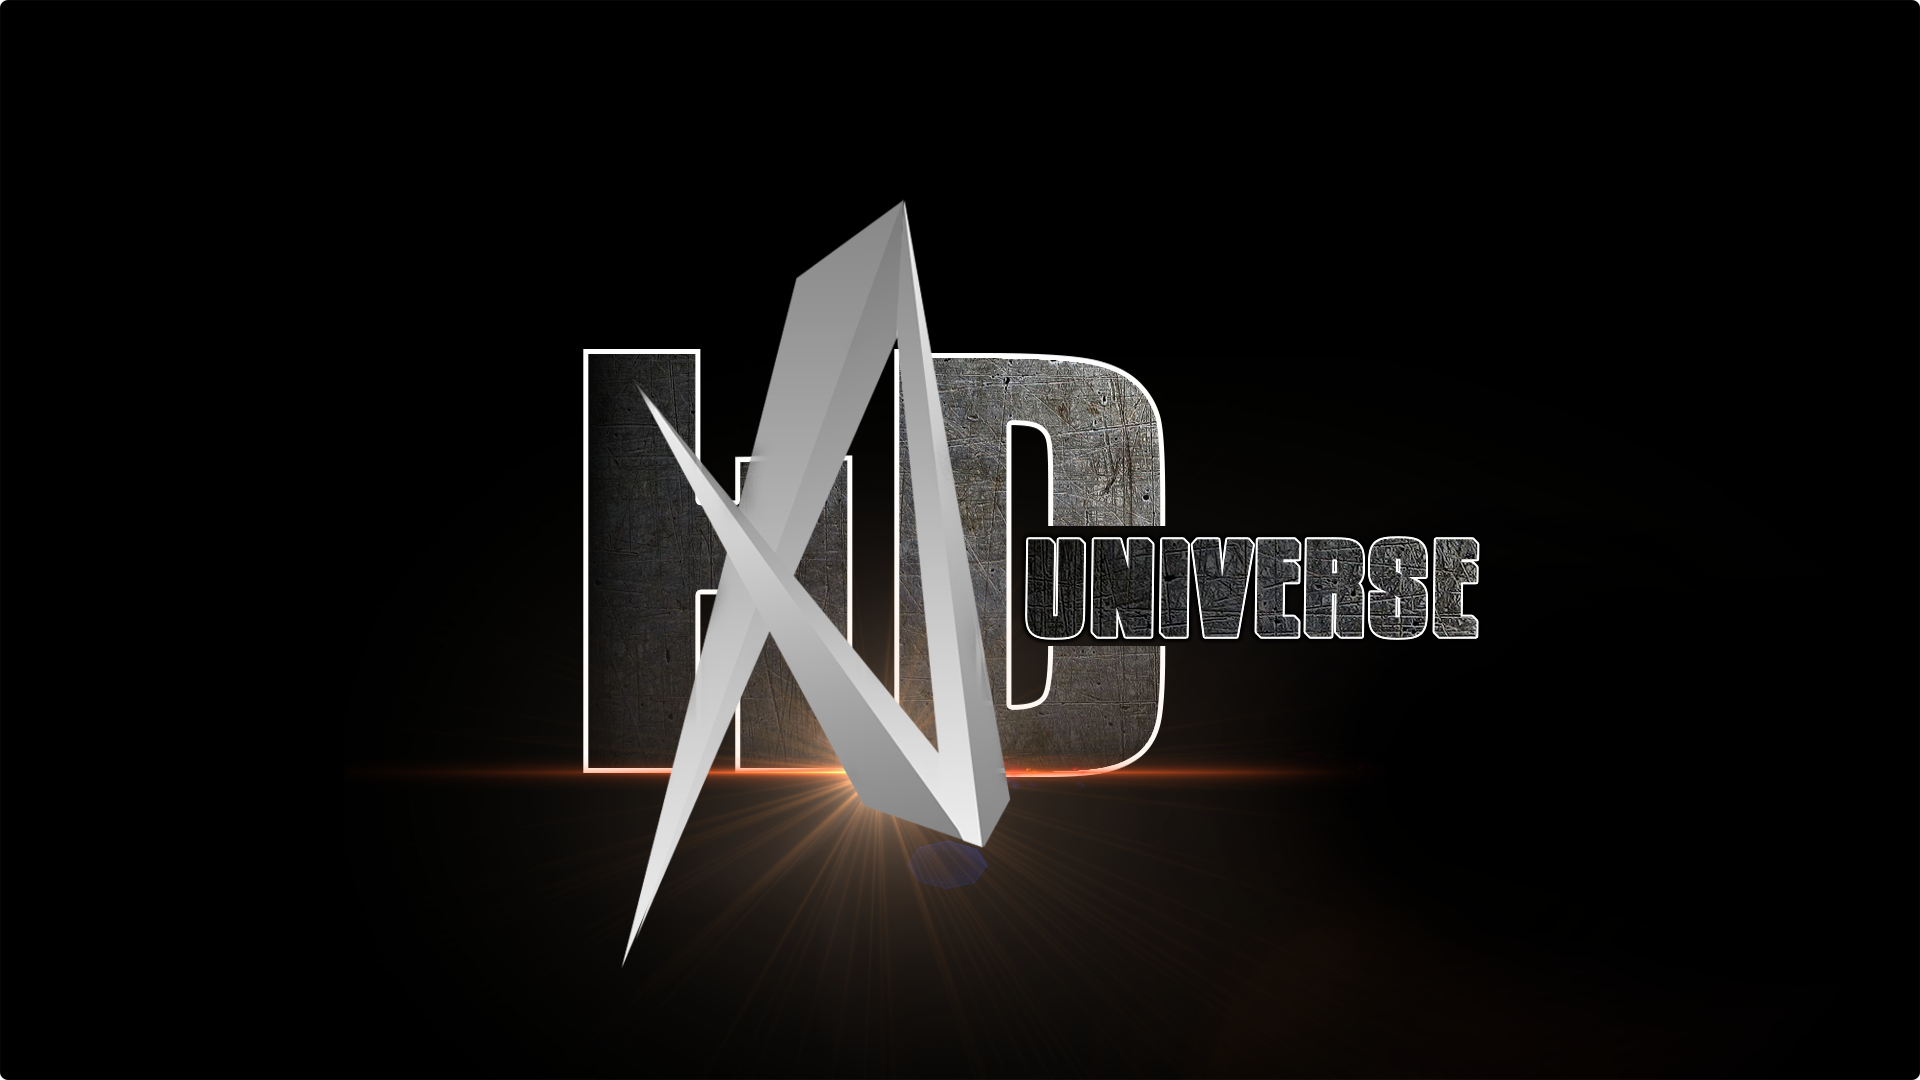 hd universe logo